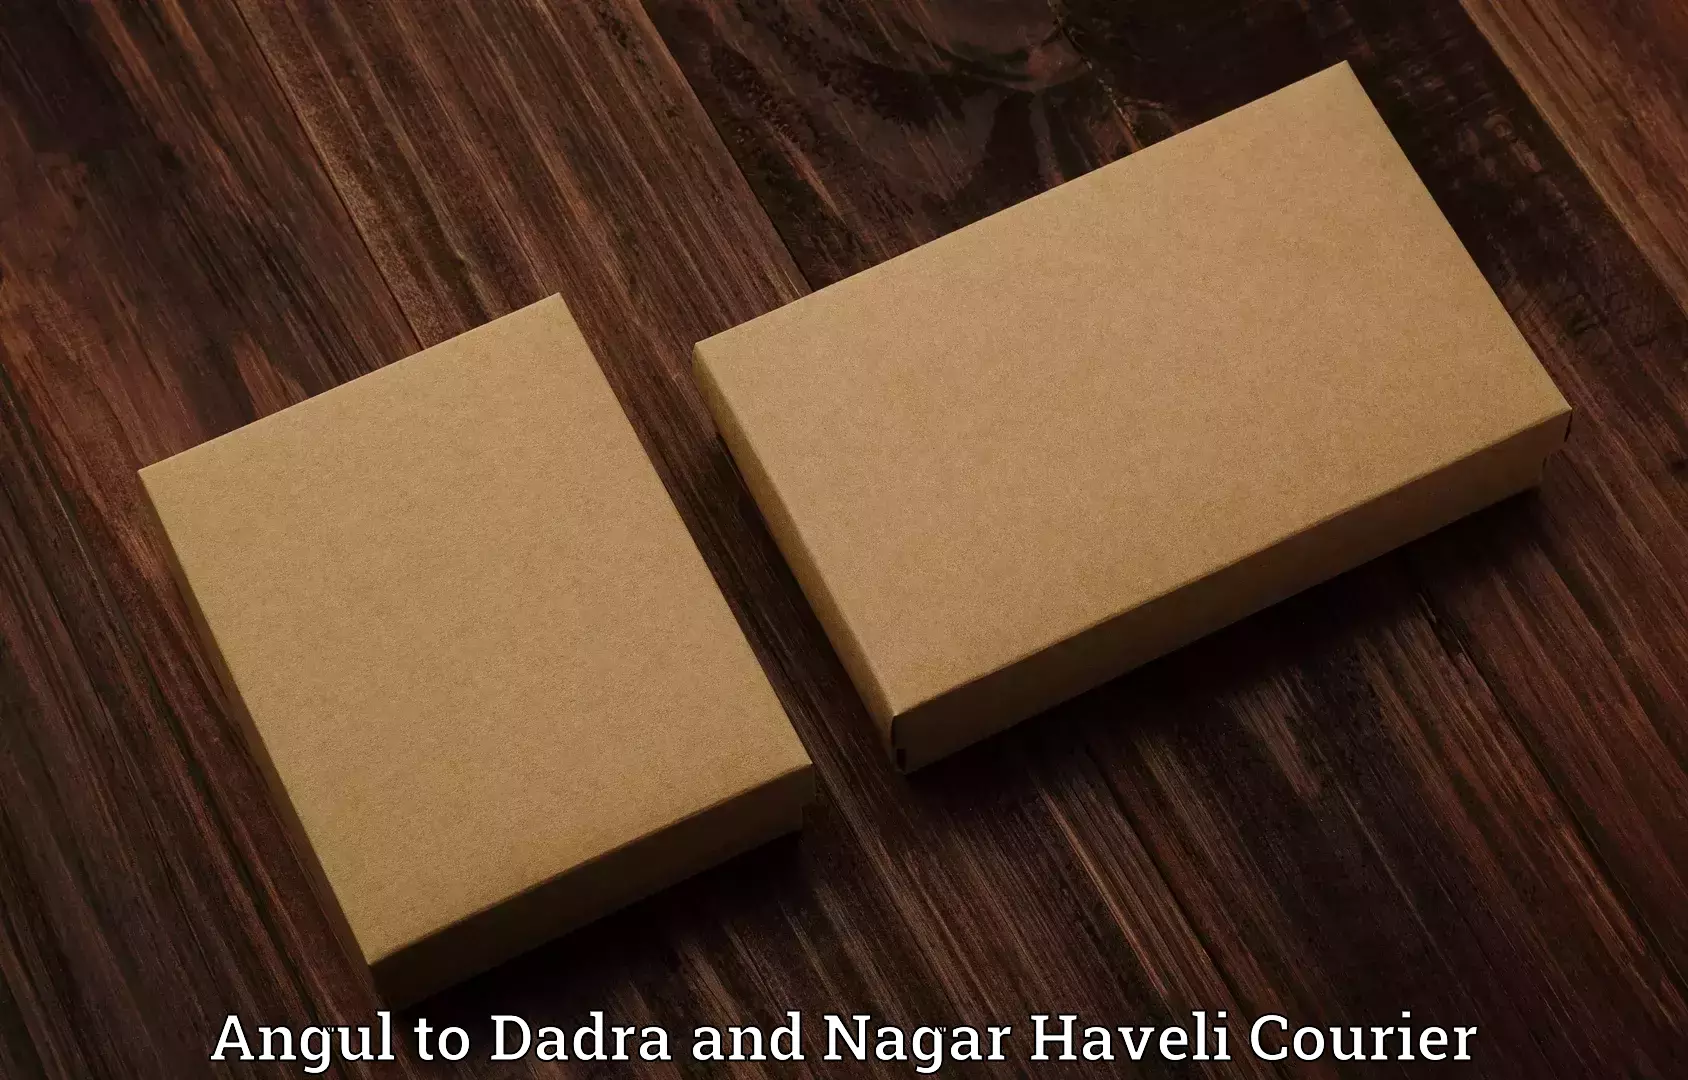 Holiday season luggage delivery Angul to Dadra and Nagar Haveli